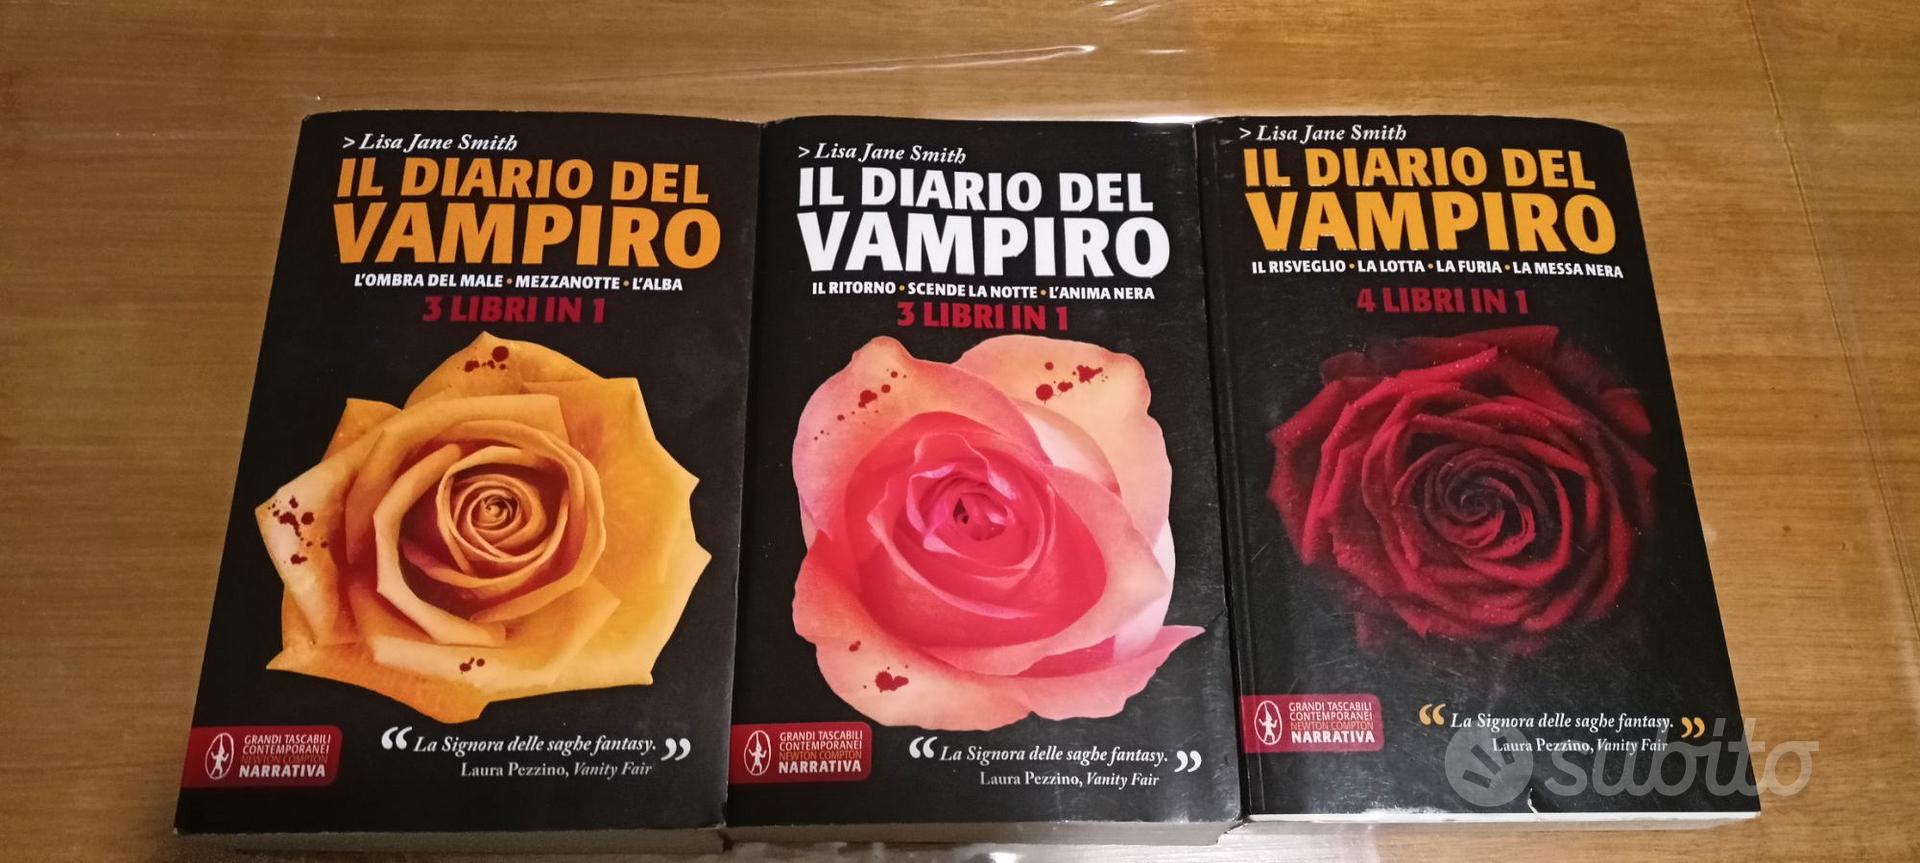 Il diario del vampiro 3 volumi - Libri e Riviste In vendita a Verona